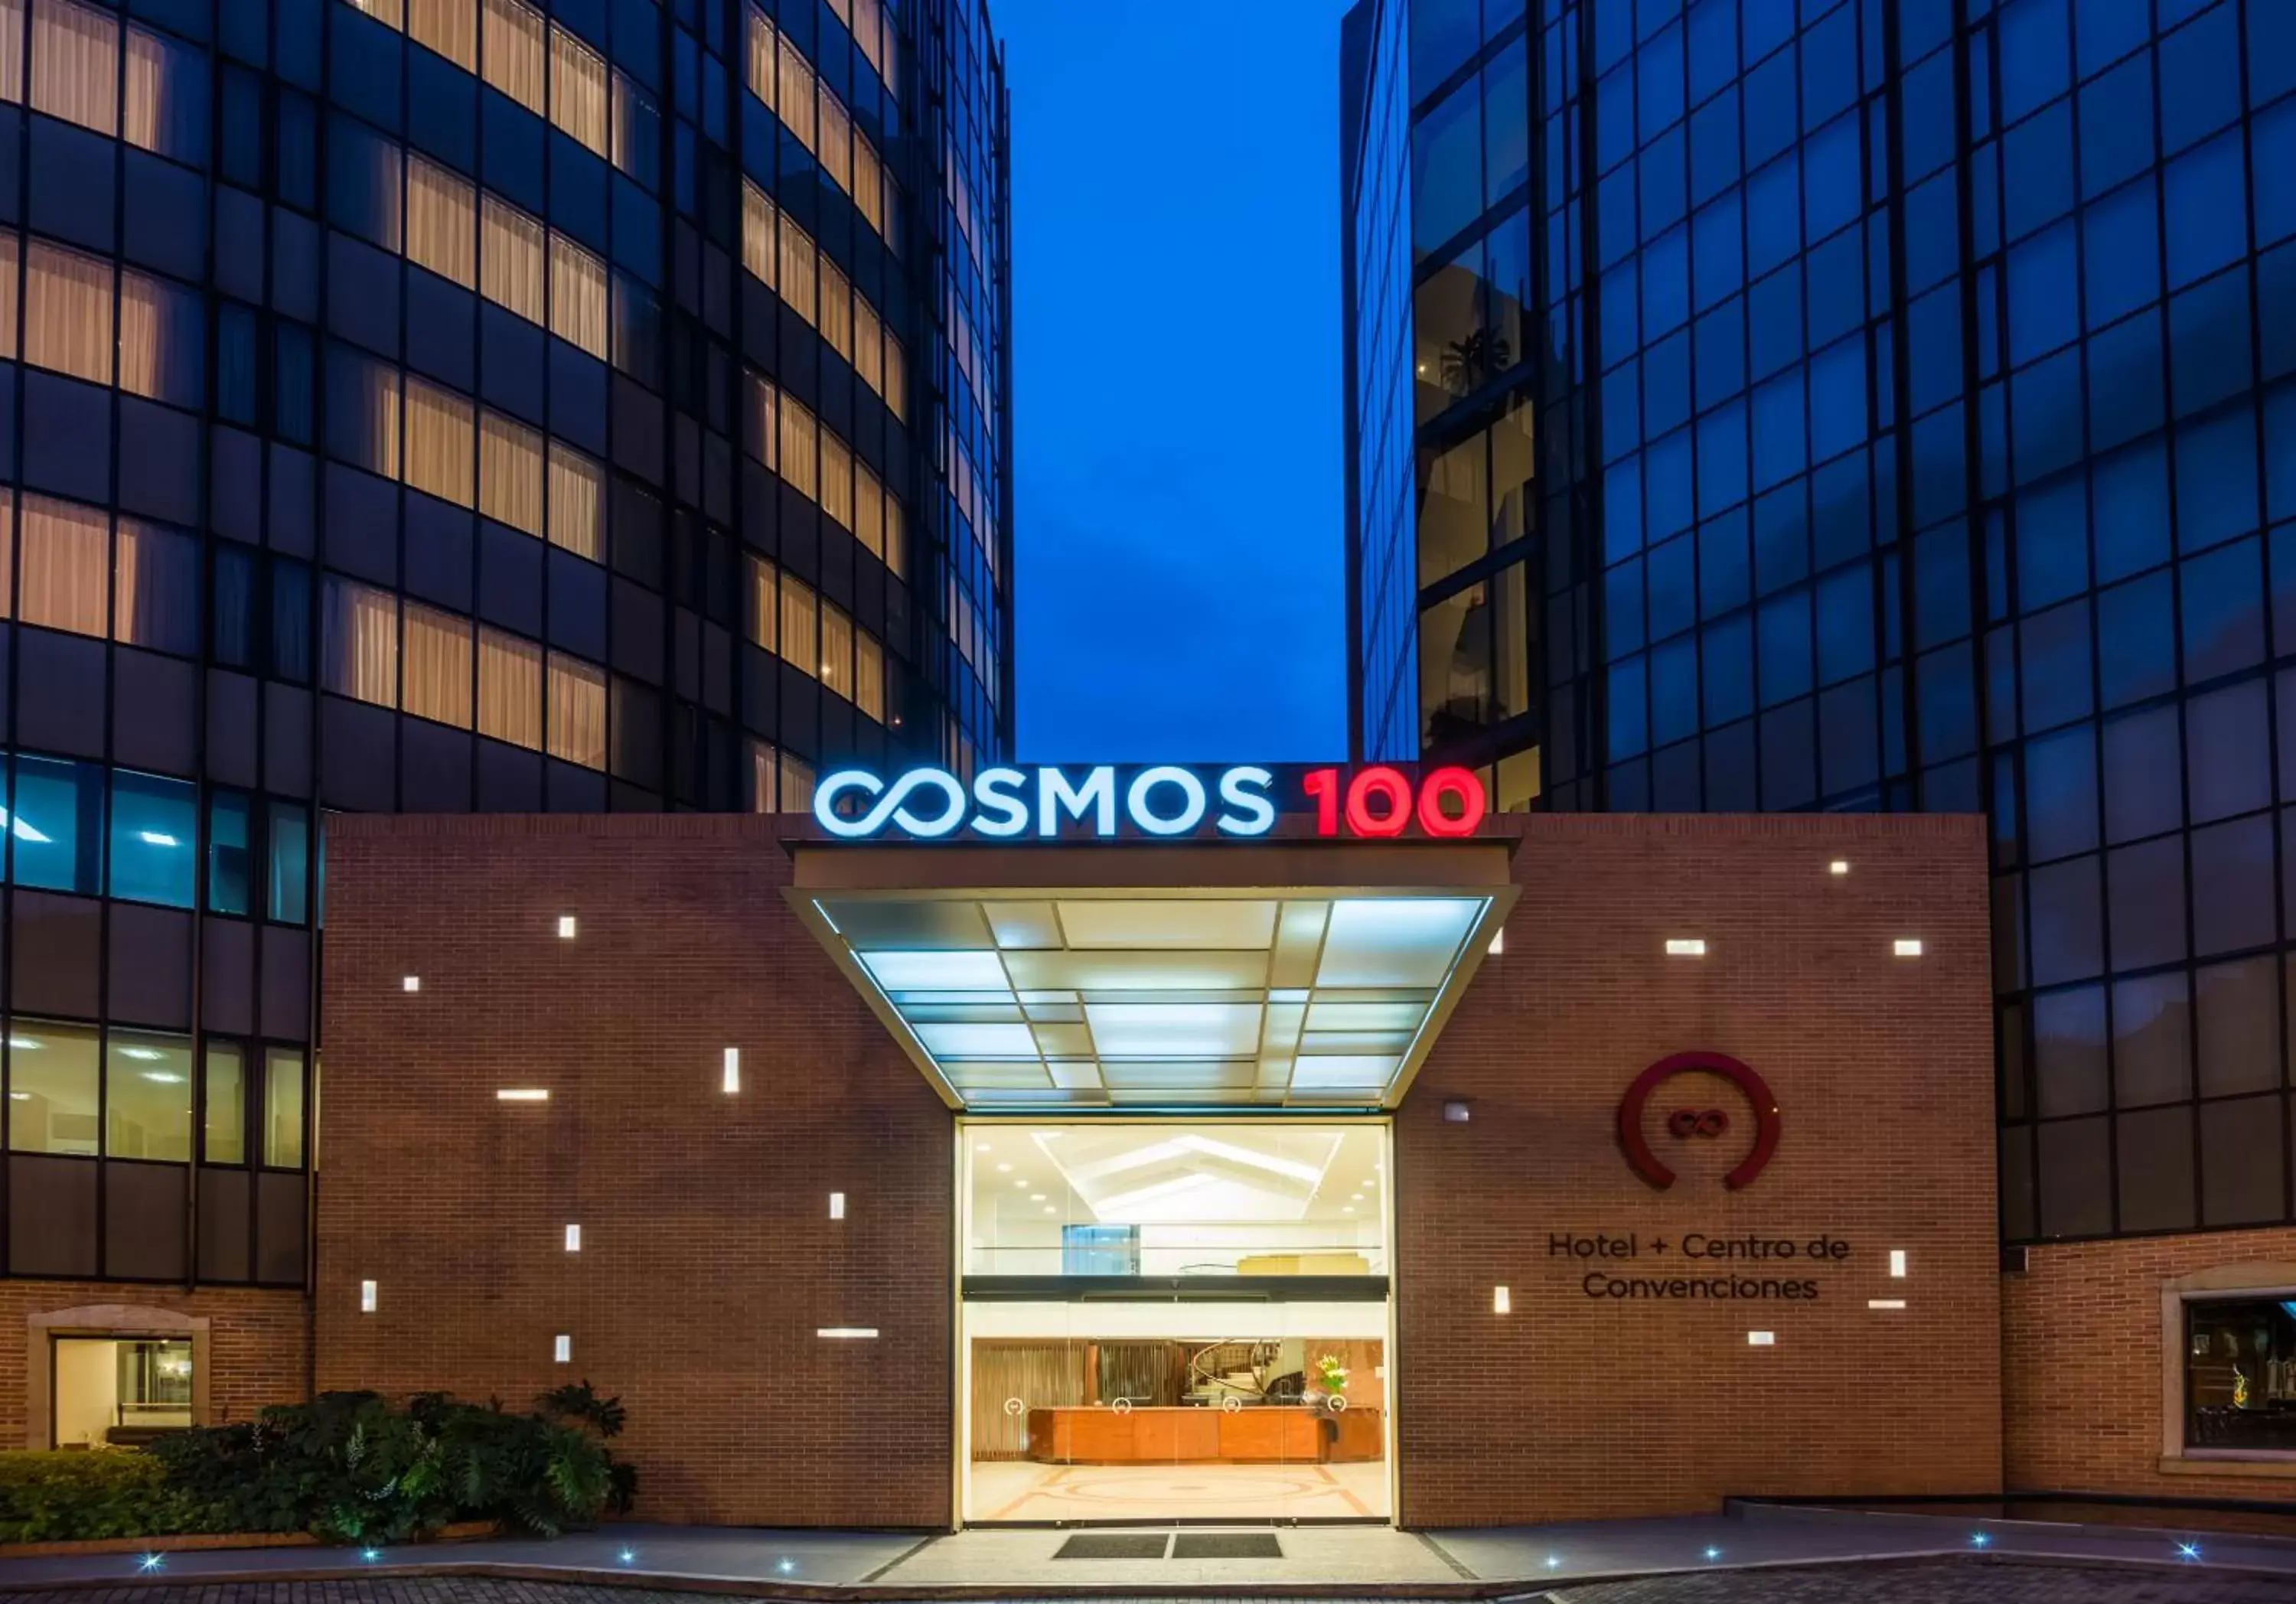 Property Building in Cosmos 100 Hotel & Centro de Convenciones - Hoteles Cosmos